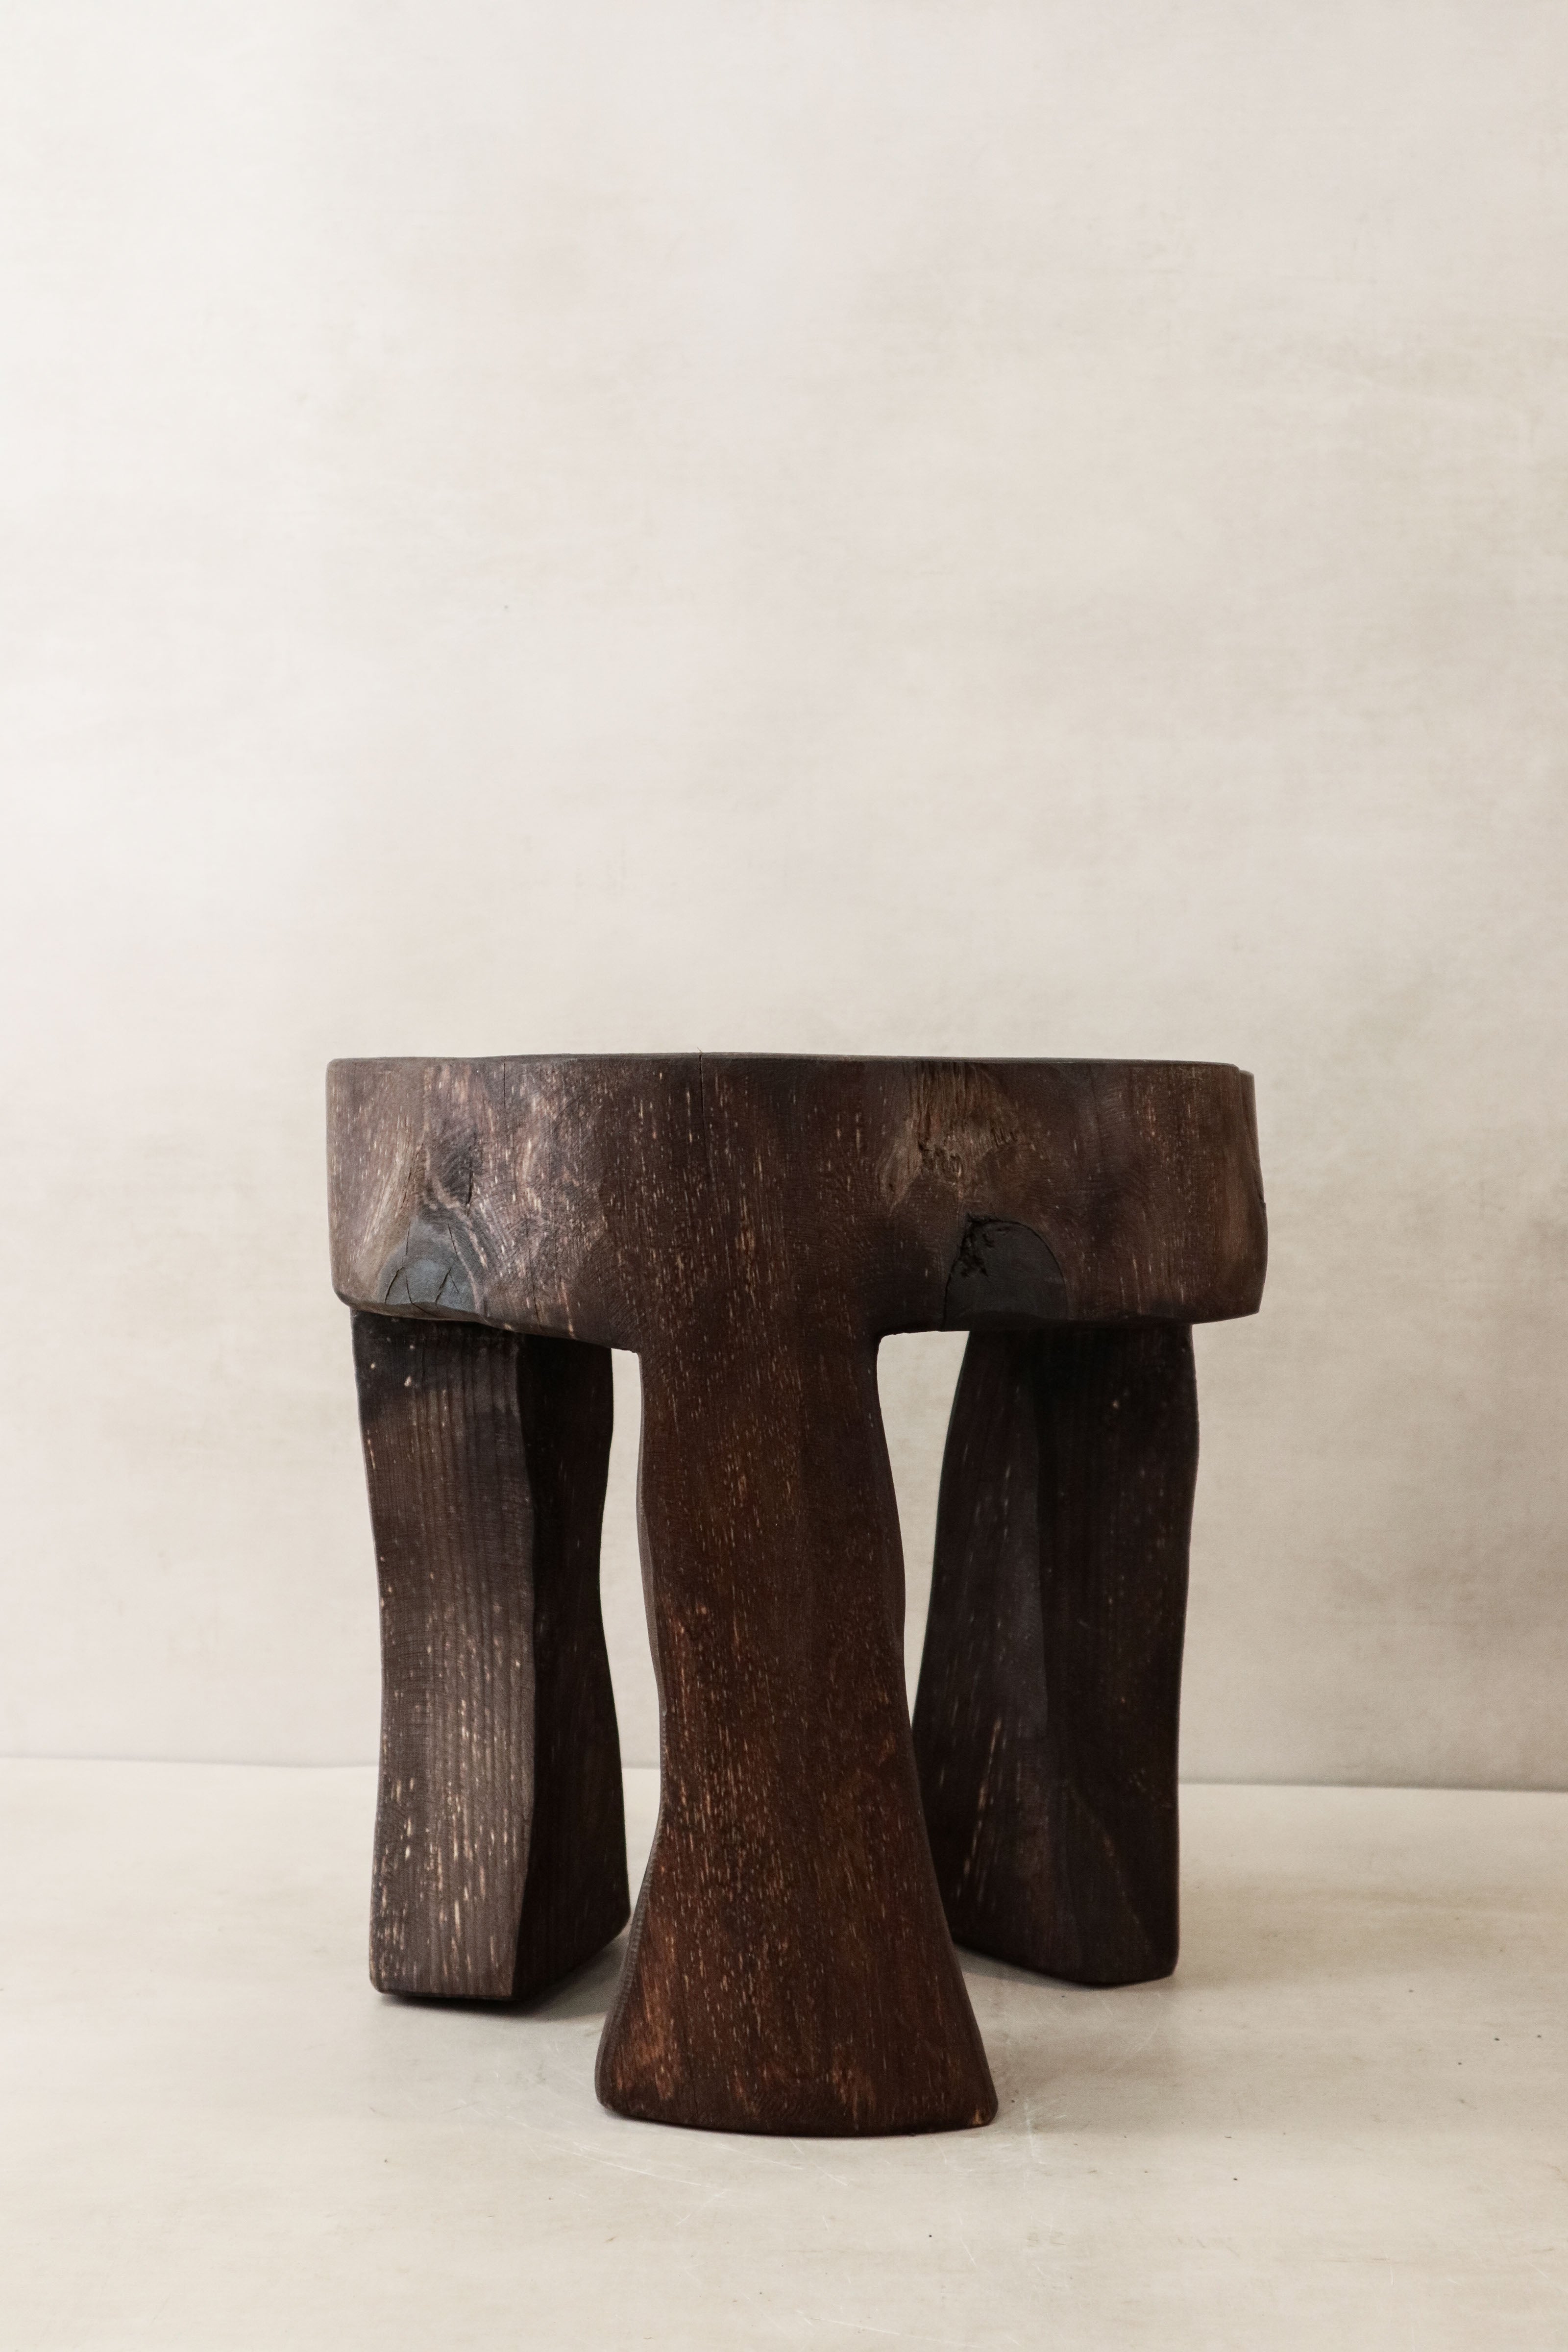 botanicalboysuk Hand Carved Wooden Stool\Side Table - 47.1